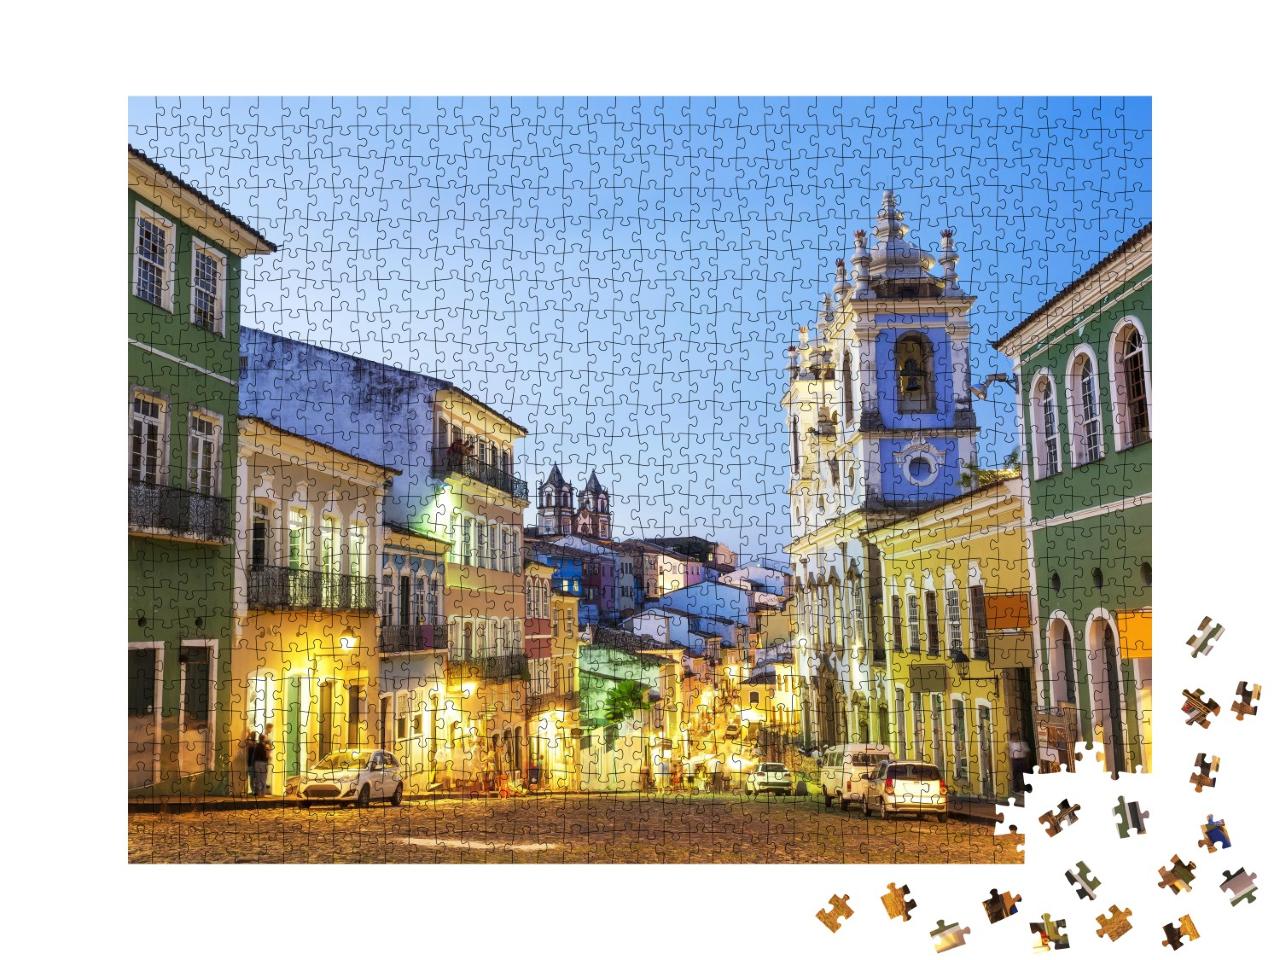 Puzzle de 1000 pièces « Maisons coloniales colorées dans le quartier historique du Pelourinho, Salvador, Brésil »